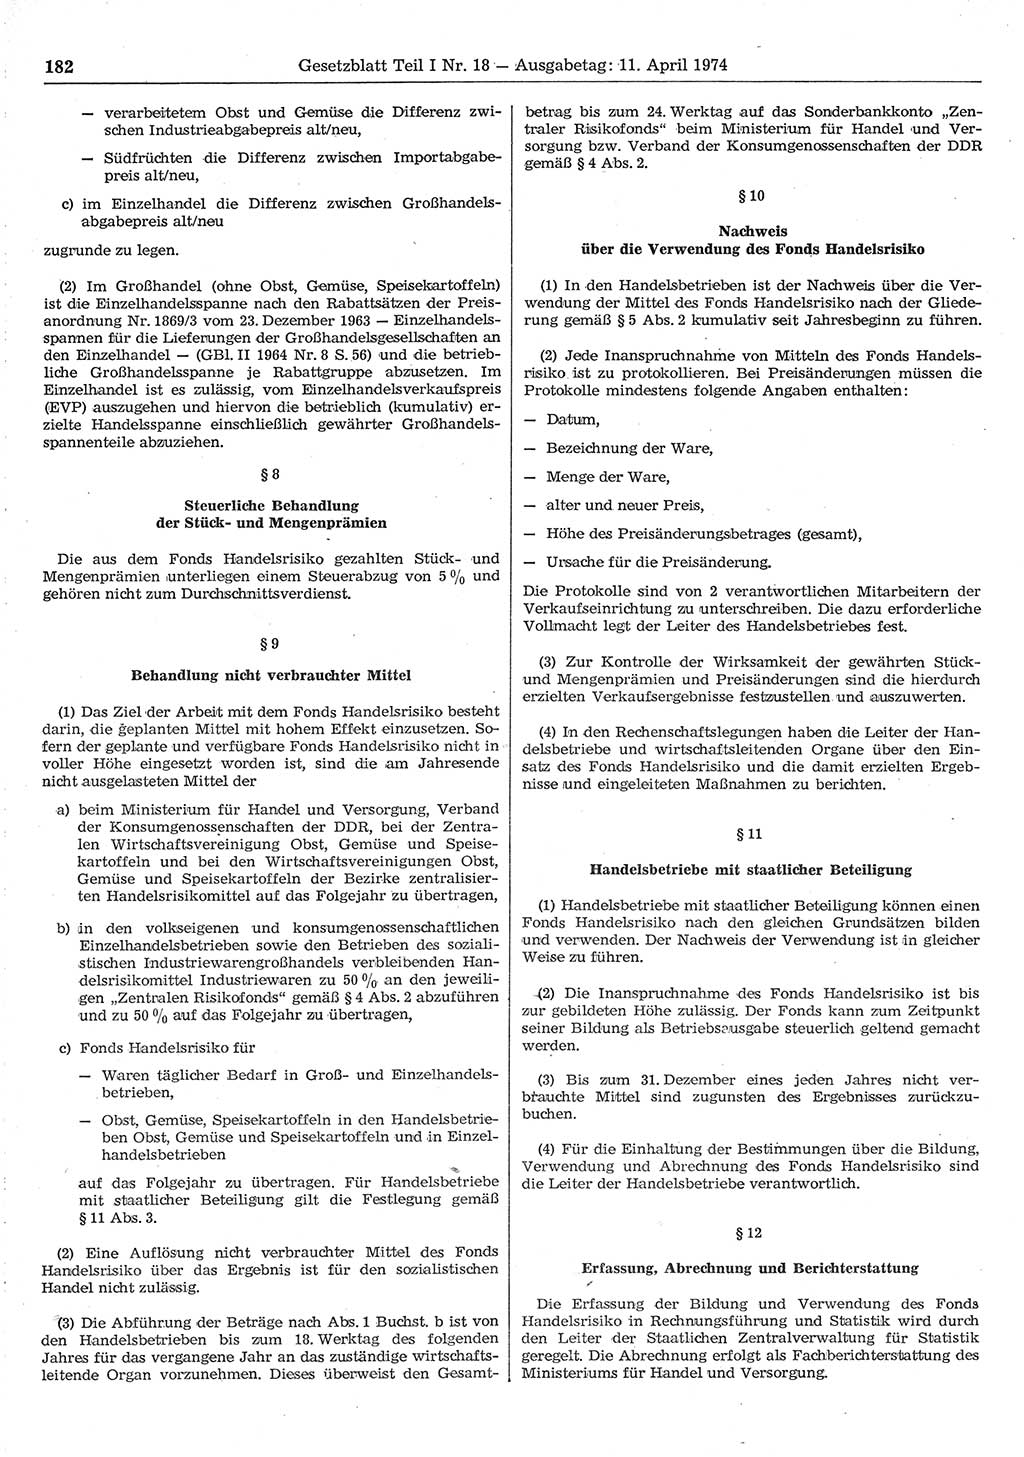 Gesetzblatt (GBl.) der Deutschen Demokratischen Republik (DDR) Teil Ⅰ 1974, Seite 182 (GBl. DDR Ⅰ 1974, S. 182)